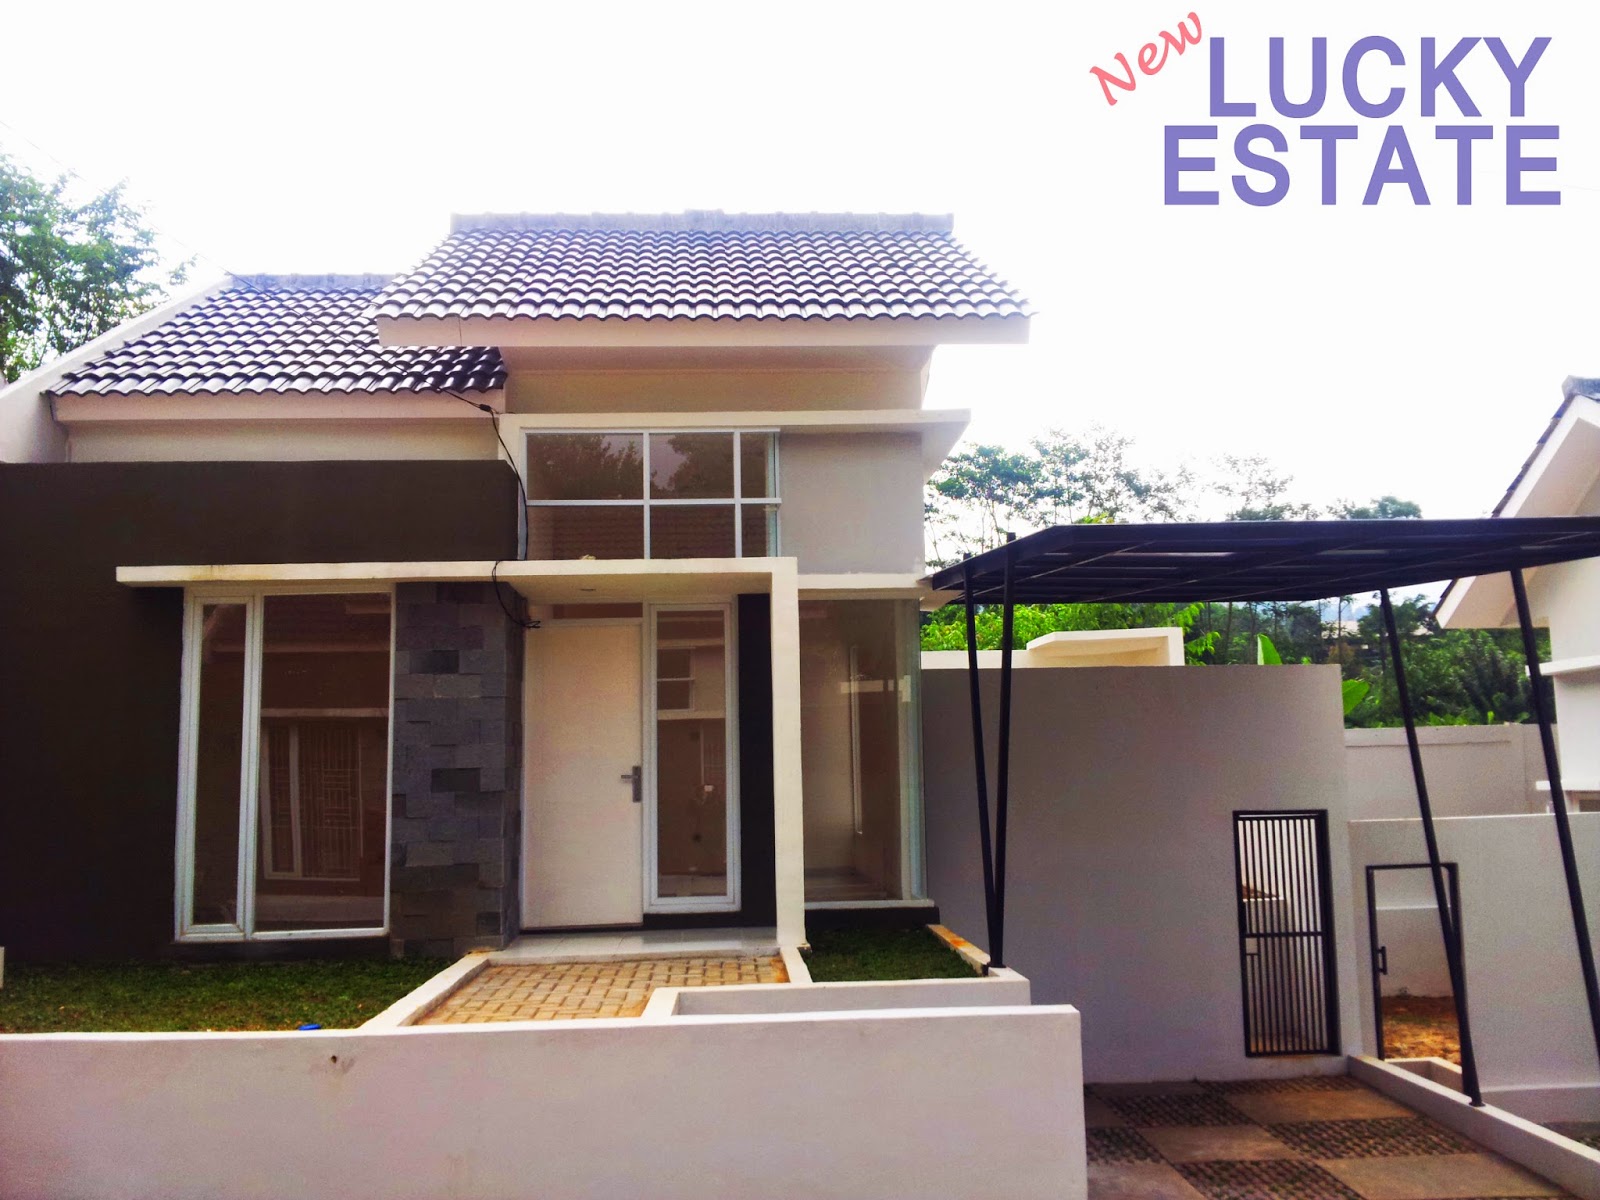 Rumah Perumahan New Lucky Estate Cicaheum Bandung